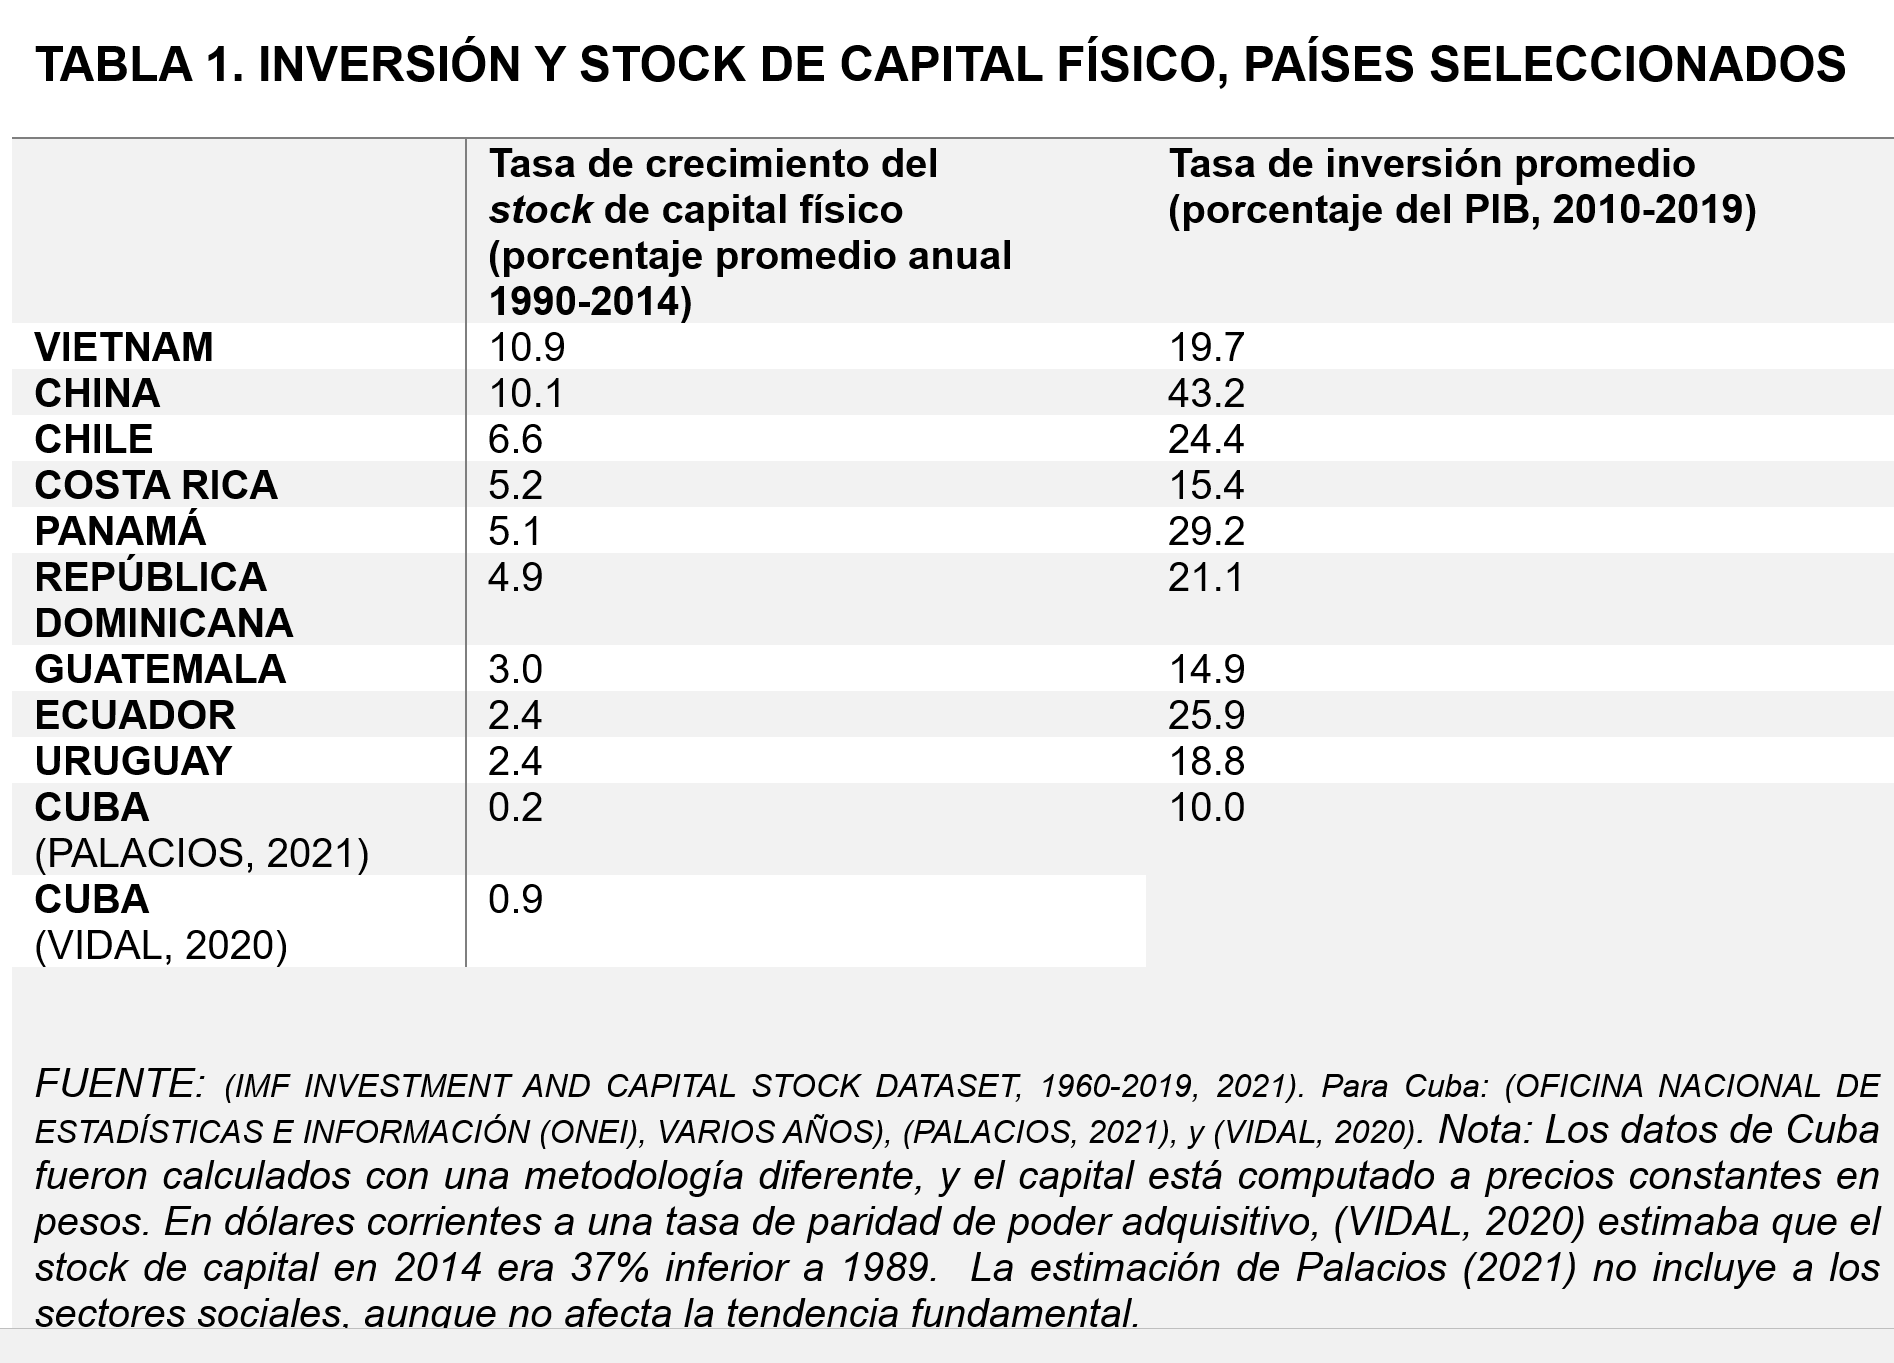 Tabla 1 demuestra la inversión del capital físico, países seleccionados y las tasas de crecimiento del stock de capital físico y tasa de inversión promedio